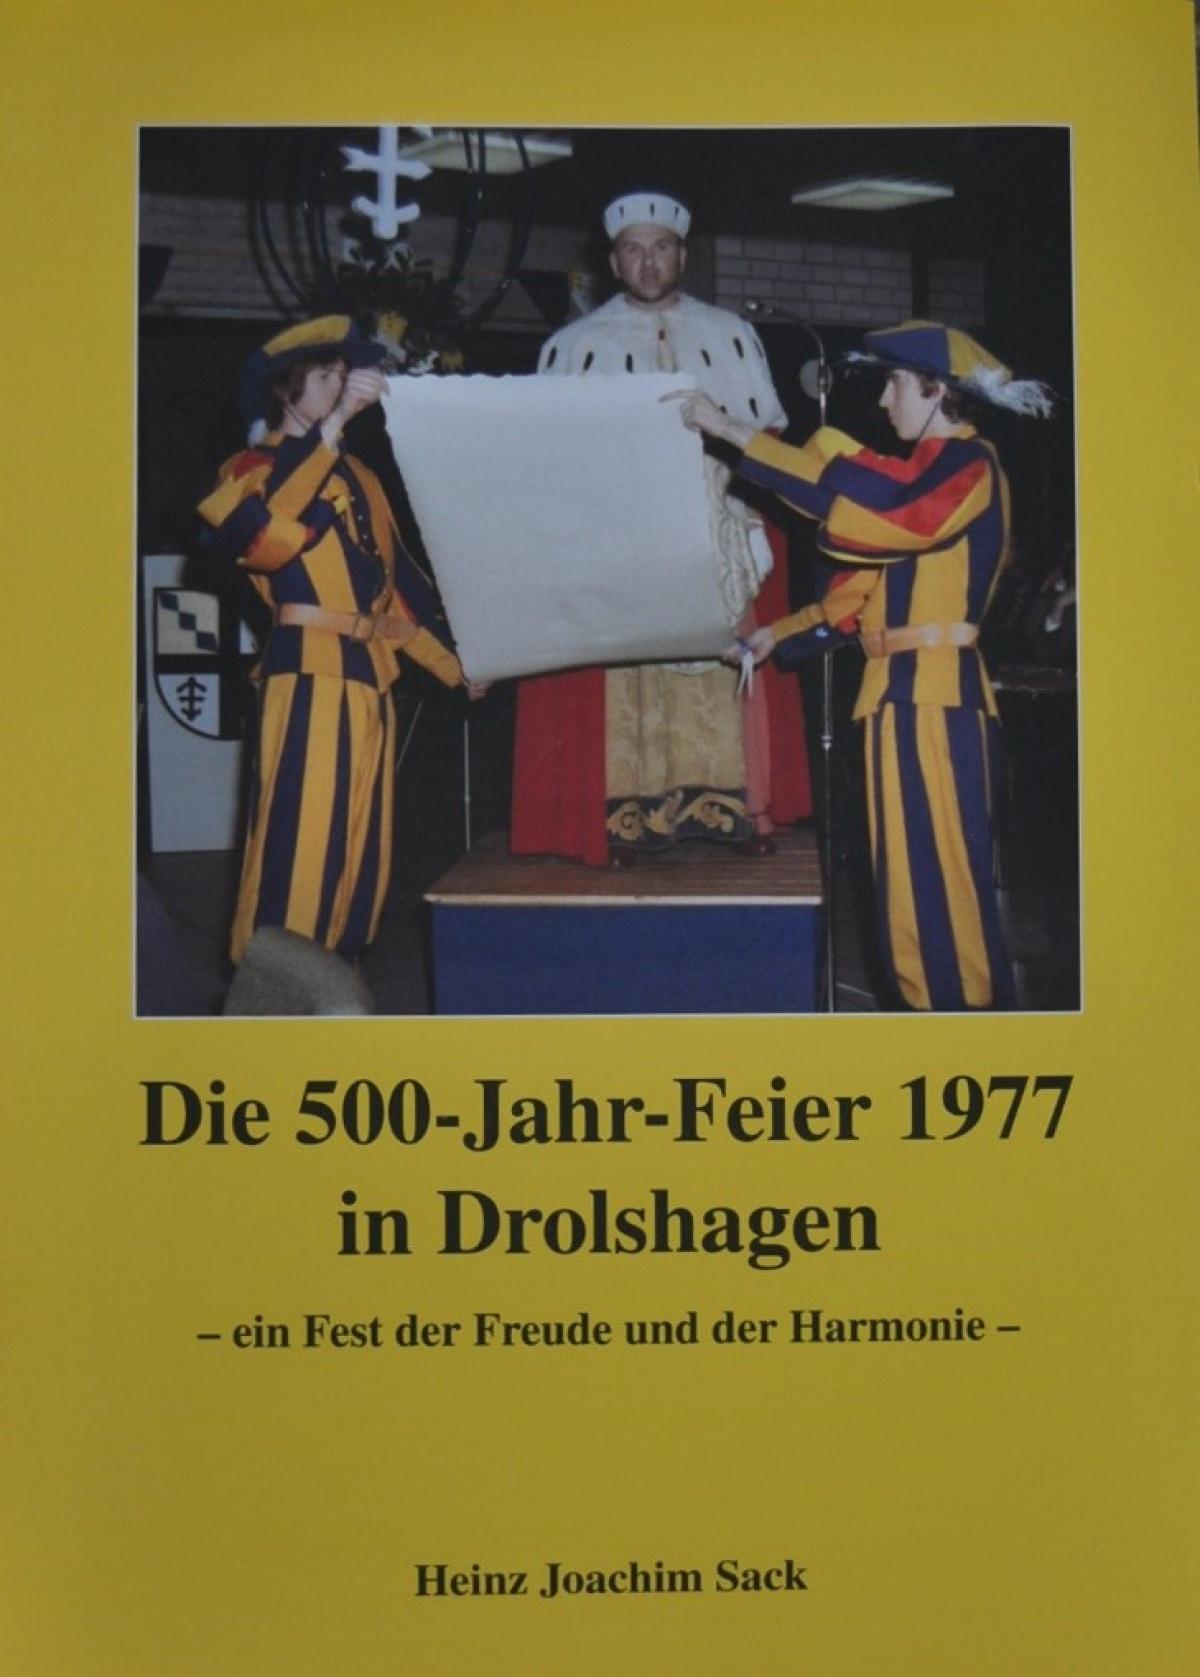 Das 500-jährige Stadtjubiläum von Drolshagen  im Jahr 1977 ist Thema des neuen Buches von Heinz Joachim Sack. von privat